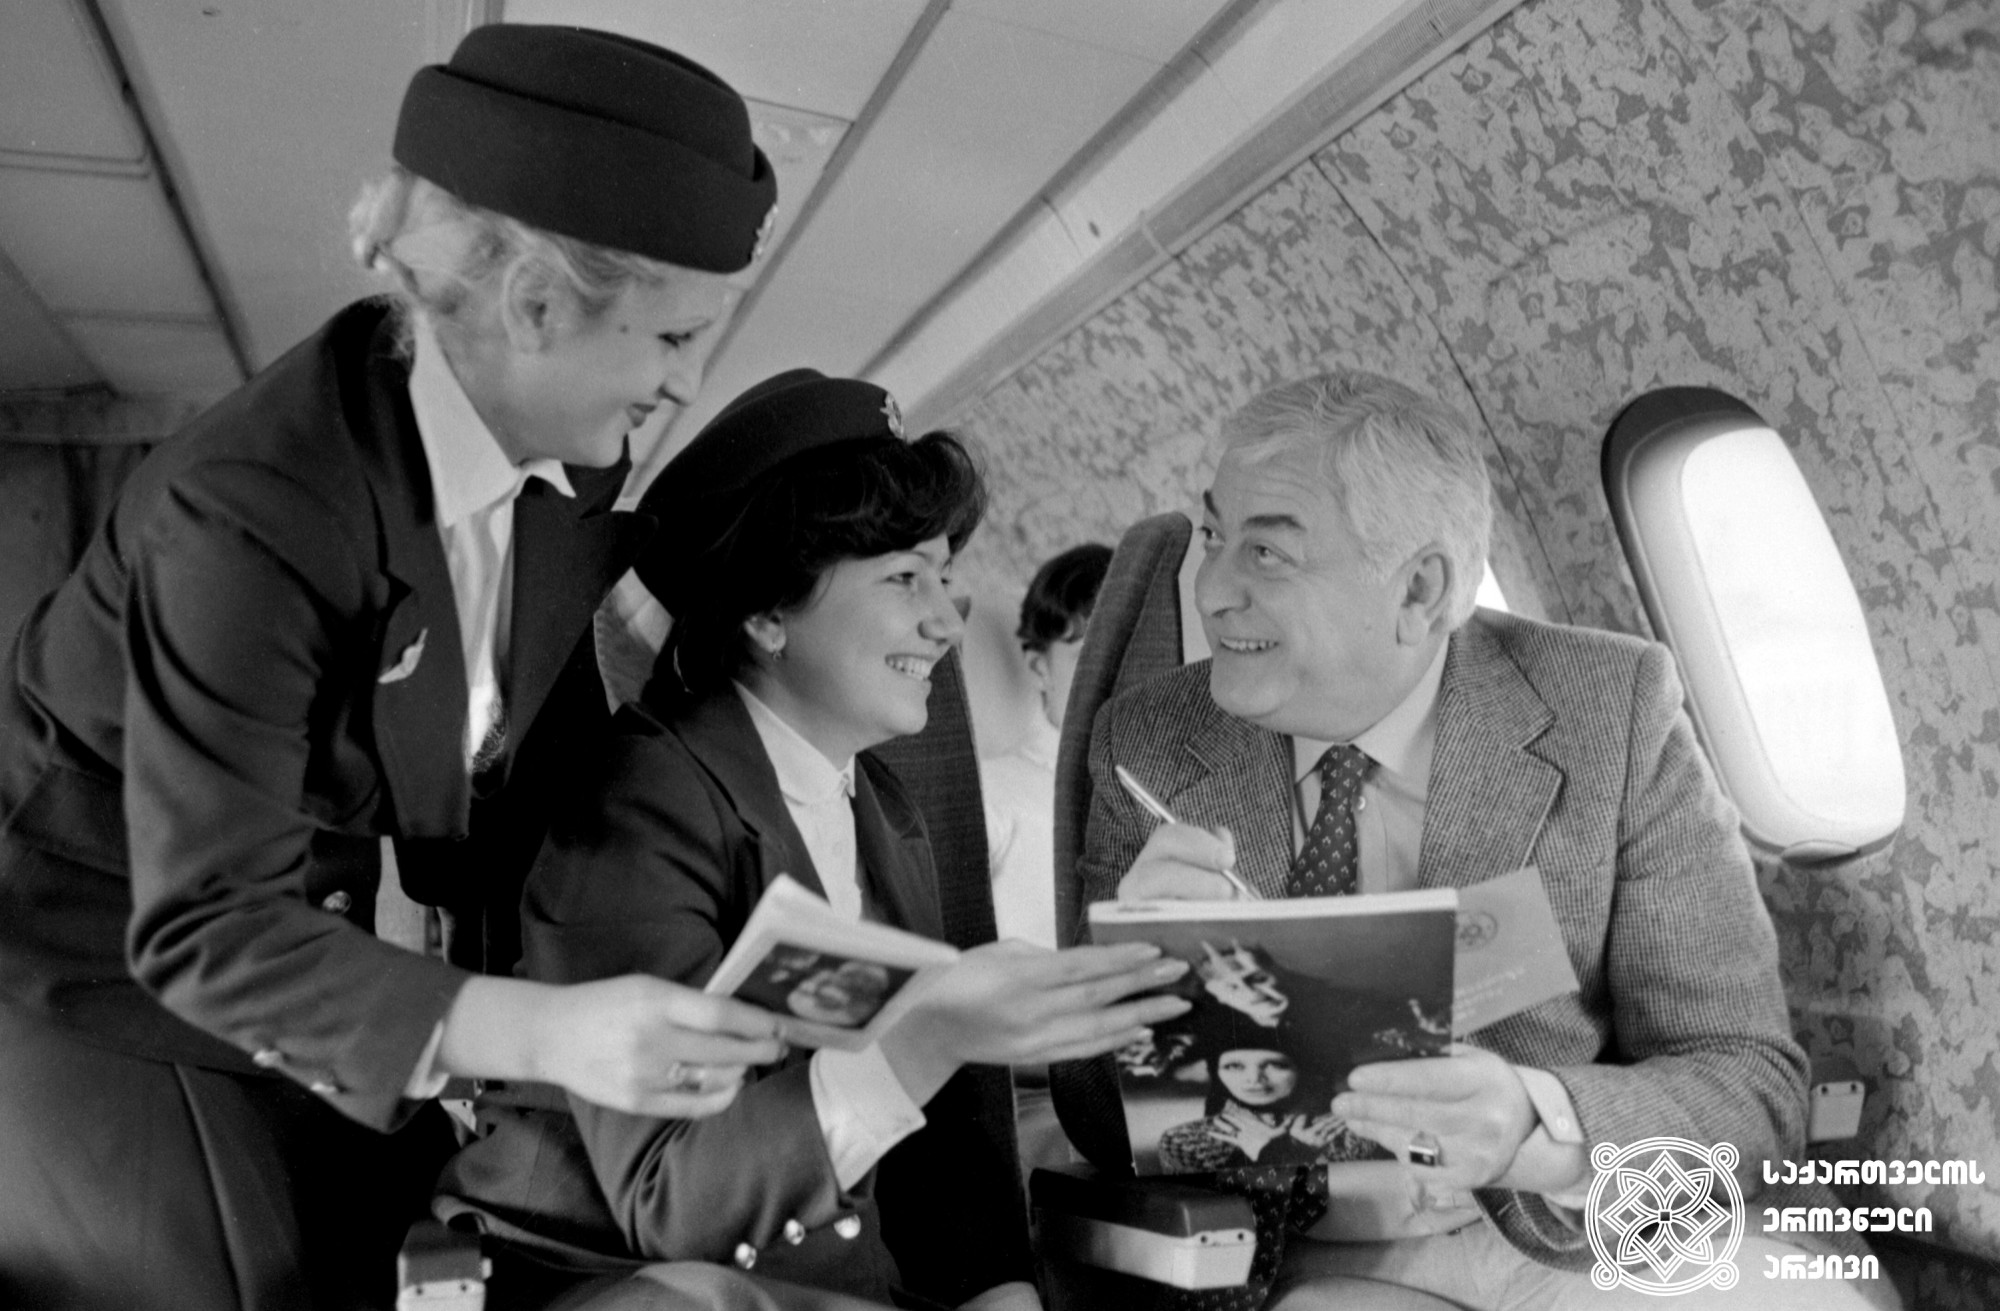 რამაზ ჩხიკვაძე ბორტგამცილებლებს აძლევს ავტოგრაფს. <br>
ანატოლი რუხაძის ფოტო. <br>
1983 წელი. <br>
Ramaz Chkhikvadze signs an autograph to stewardess. <br>
Photo by Anatoly Rukhadze. <br>
1983. <br>